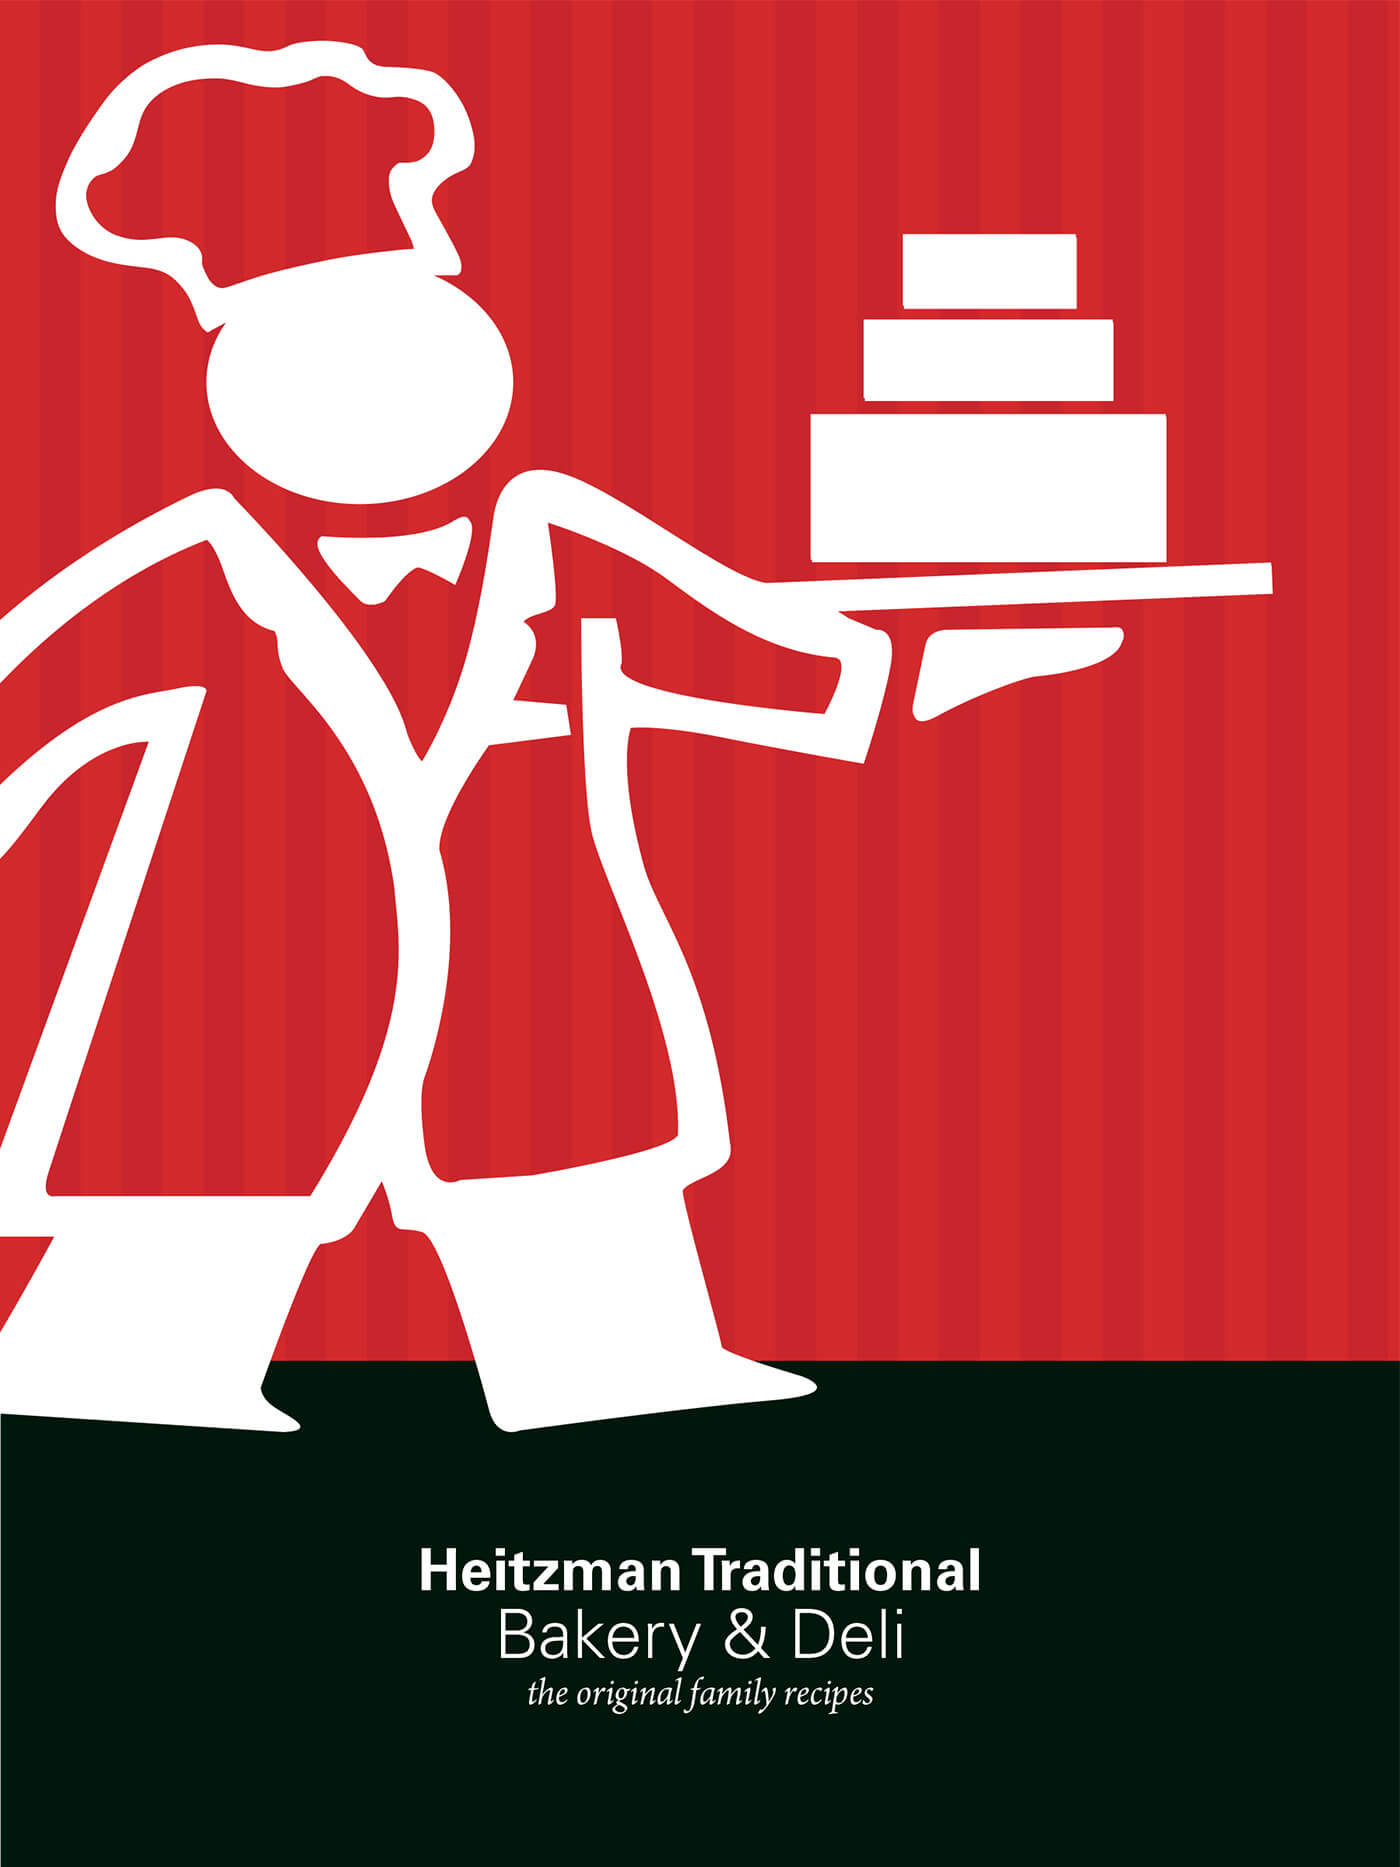 Heitzman Bakery Promotional Materials